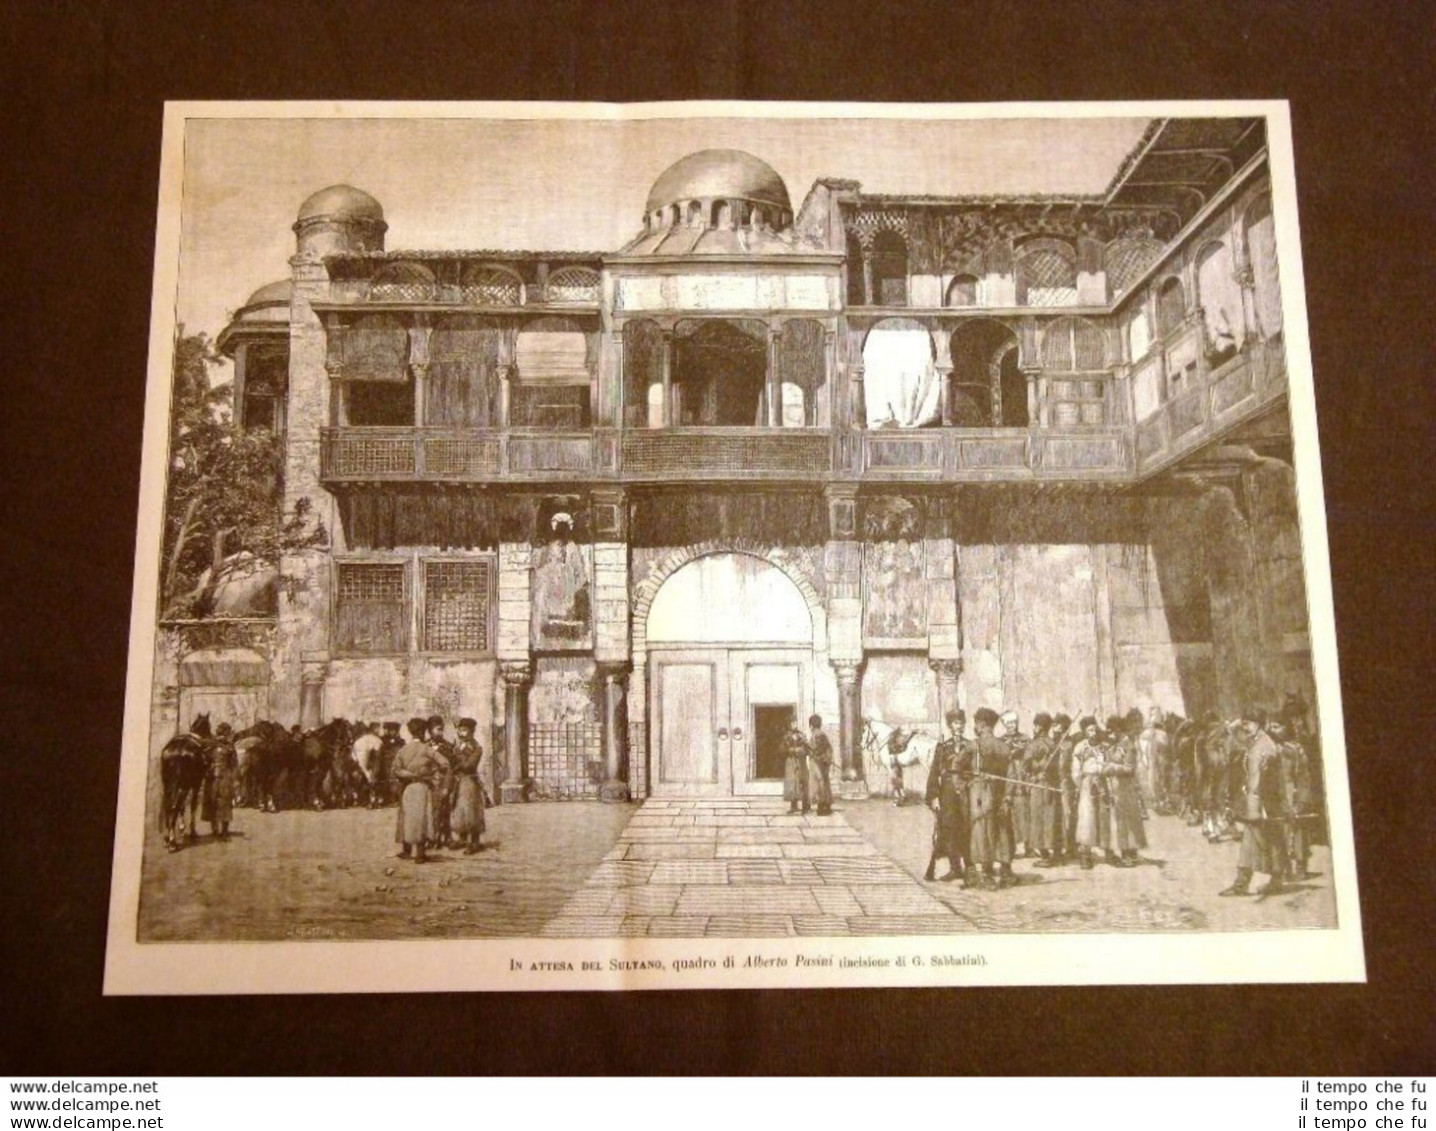 Esposizione Di Belle Arti Venezia Nel 1887 In Attesa Del Sultano Alberto Pasini - Avant 1900